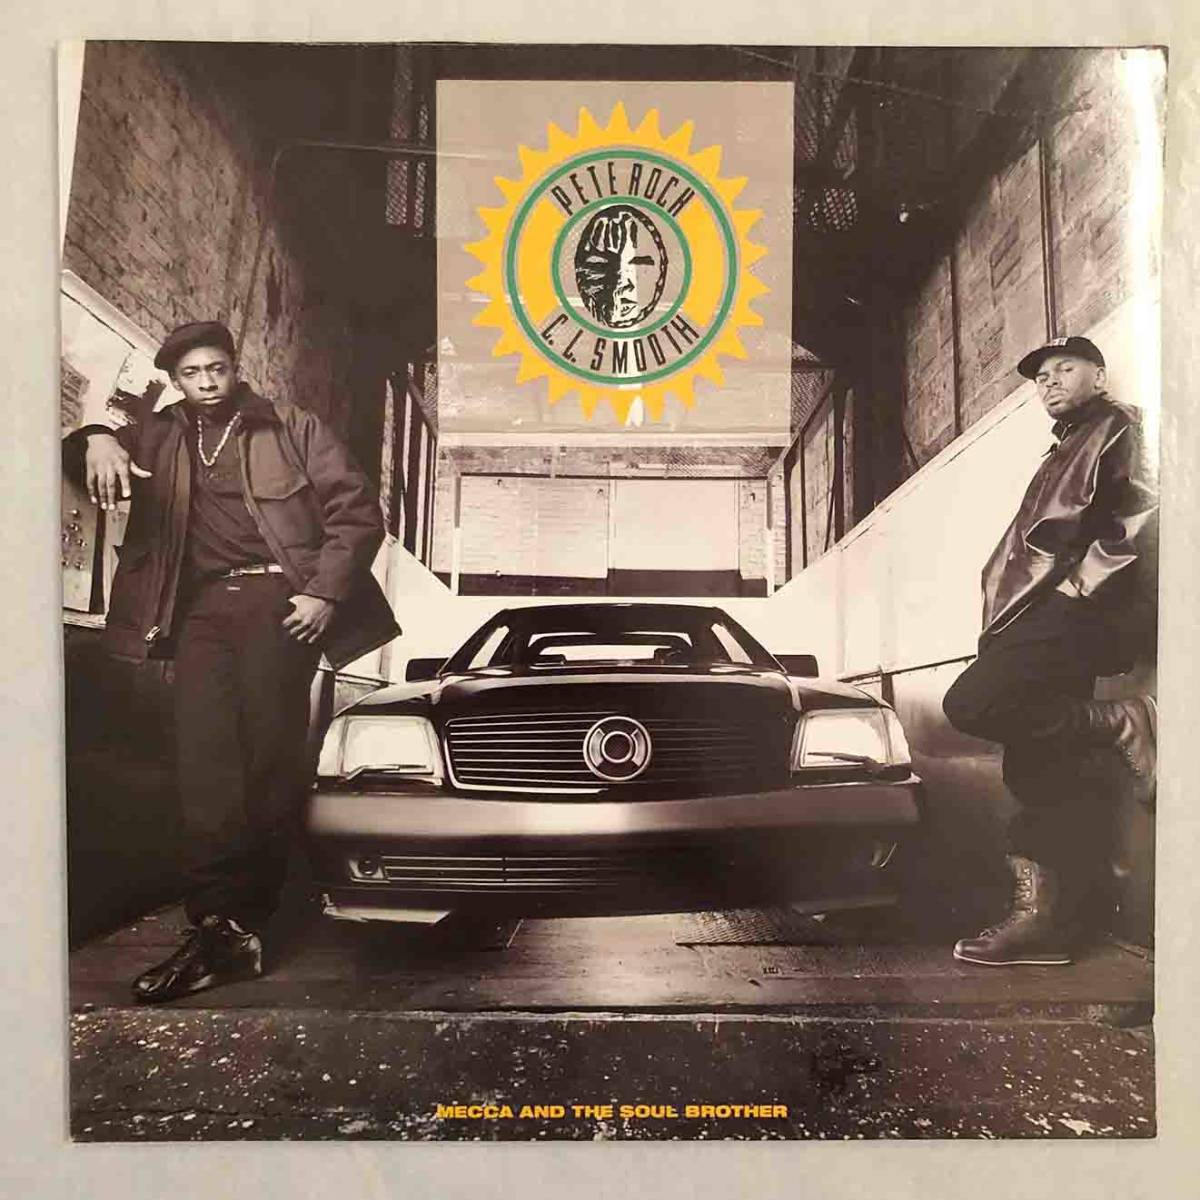 ■1992年 UK盤 オリジナル PETE ROCK & C.L. SMOOTH - Mecca And The Soul Brother 2枚組 12”LP EKT 105 Elektra